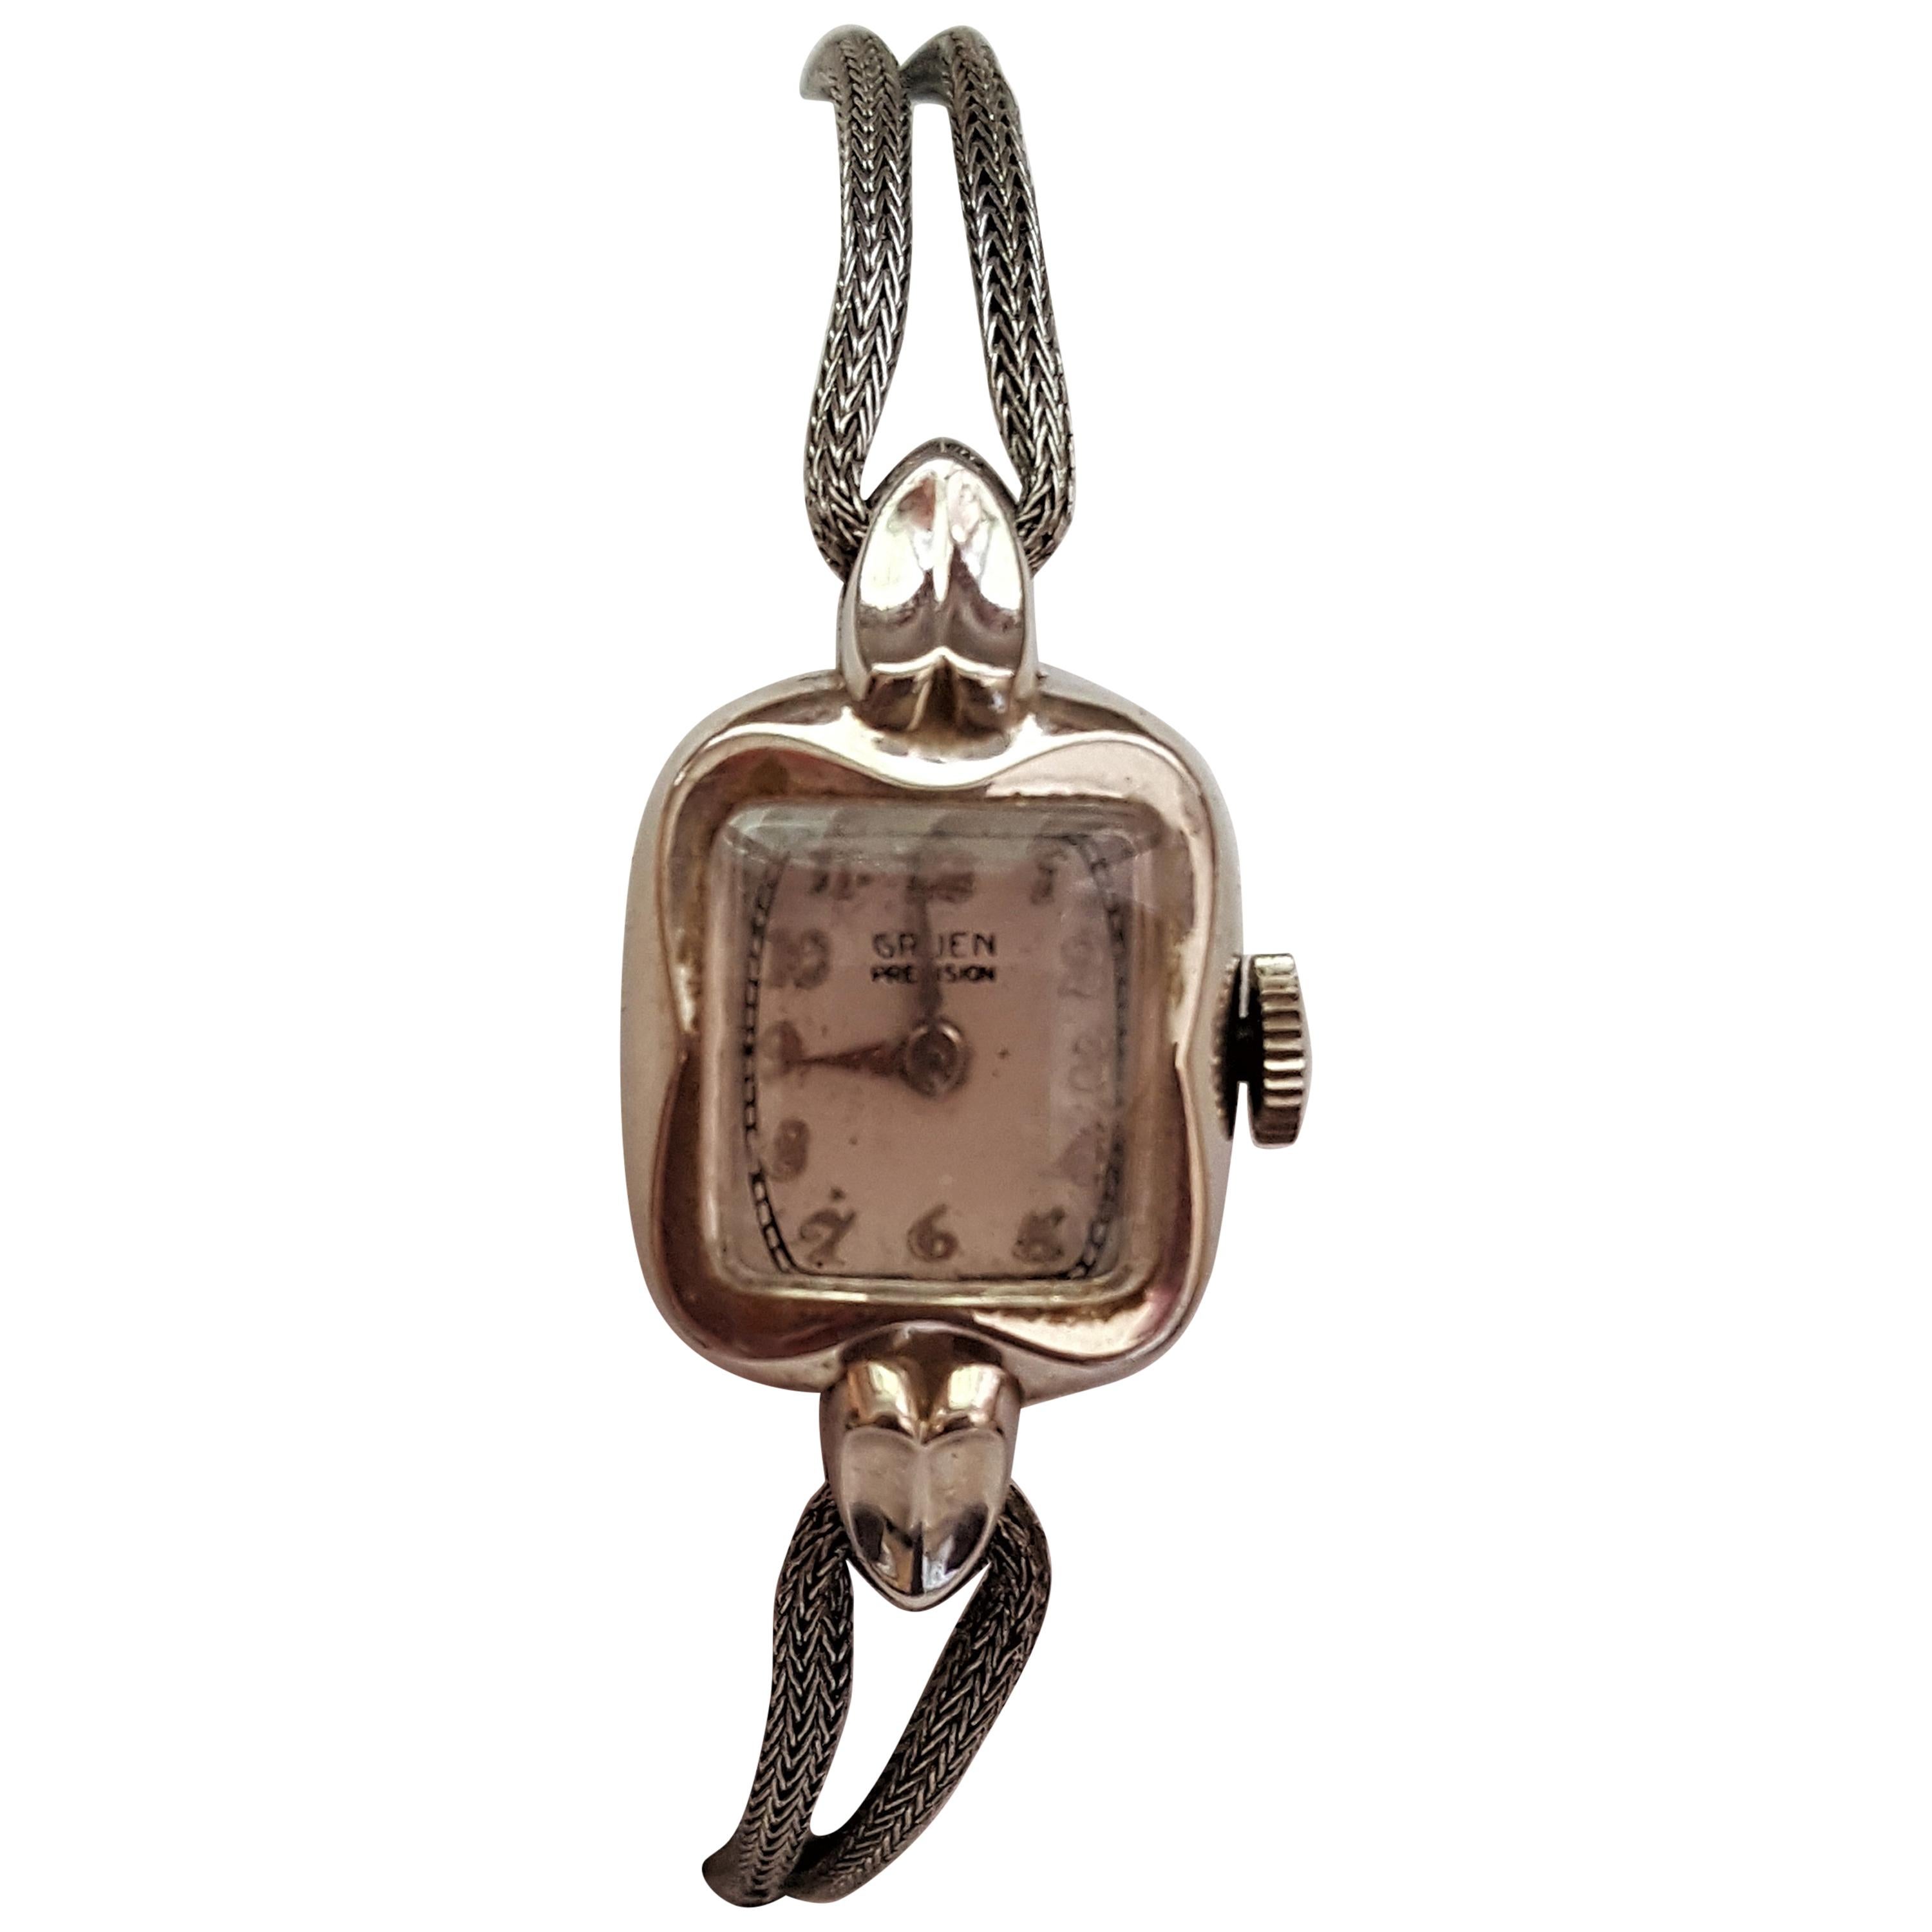 Vintage 1920s-1930s Gruen Precision Watch, 10 Karat Gold Filled, Case